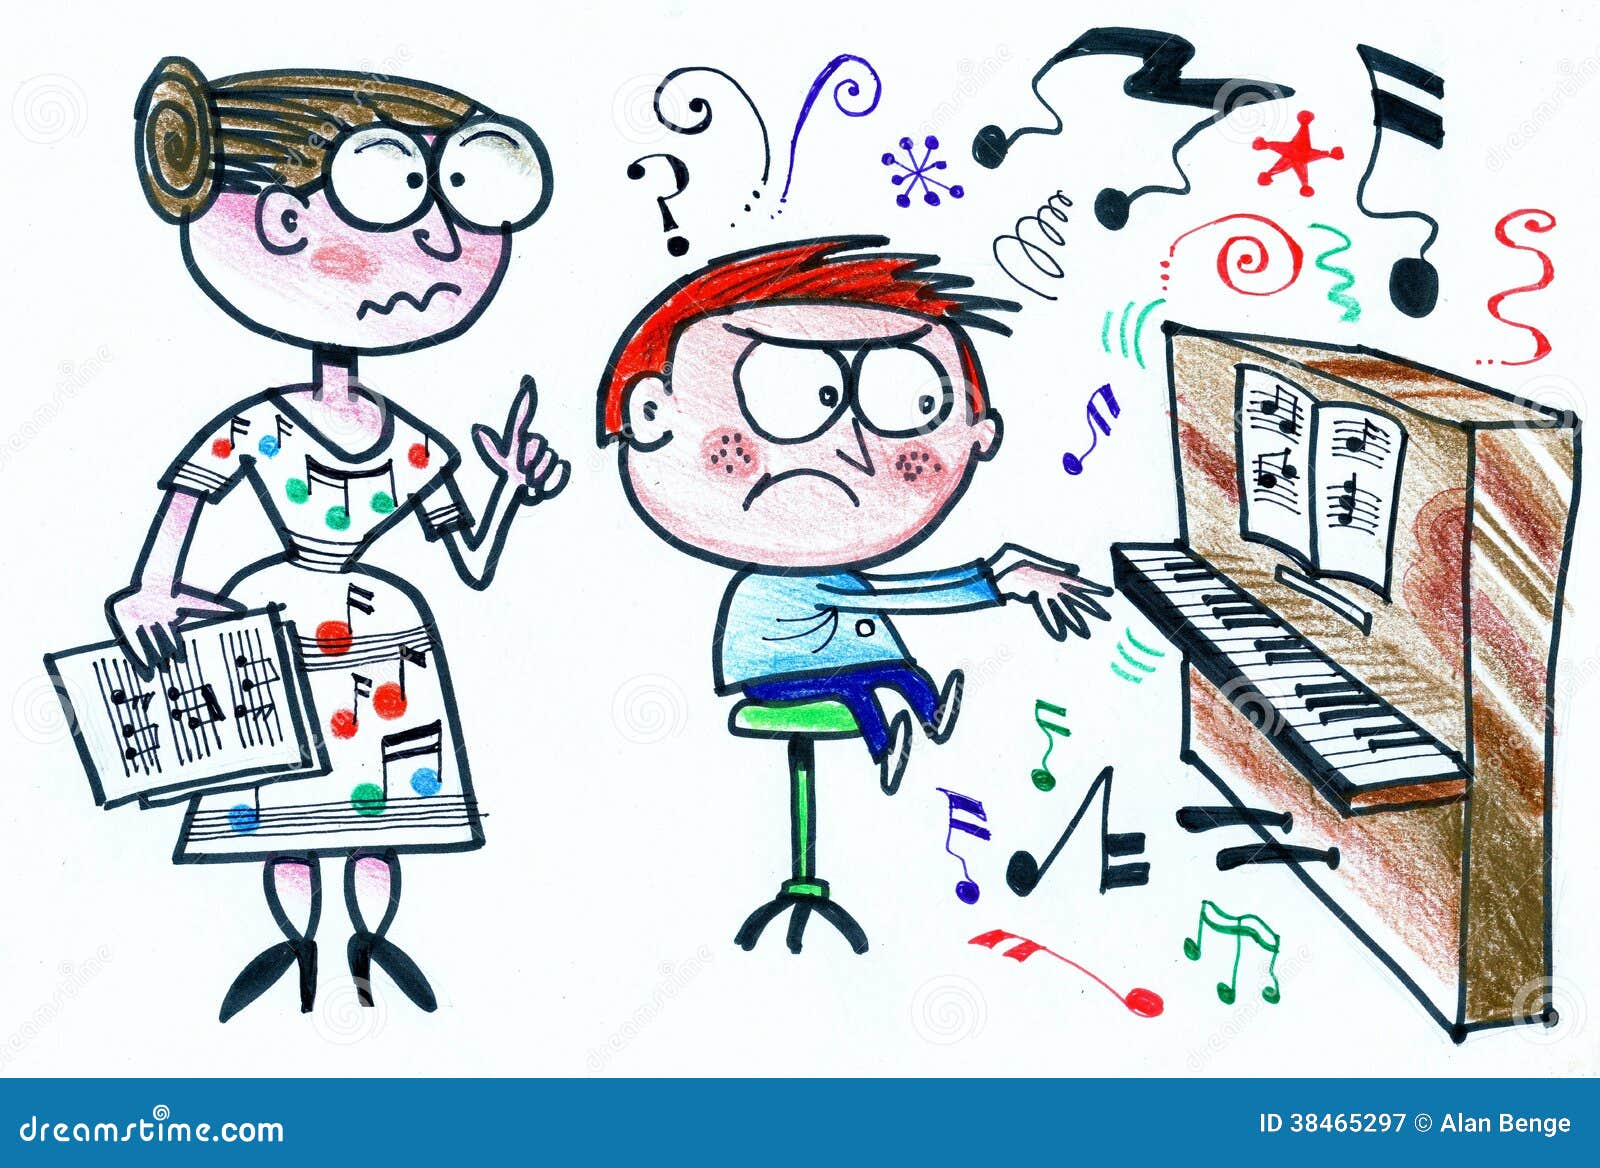 Хочу учиться песни. Рисунки связанные с музыкой. Экзамен в музыкальной школе. День учителя карикатура. Музыкальные карикатуры.